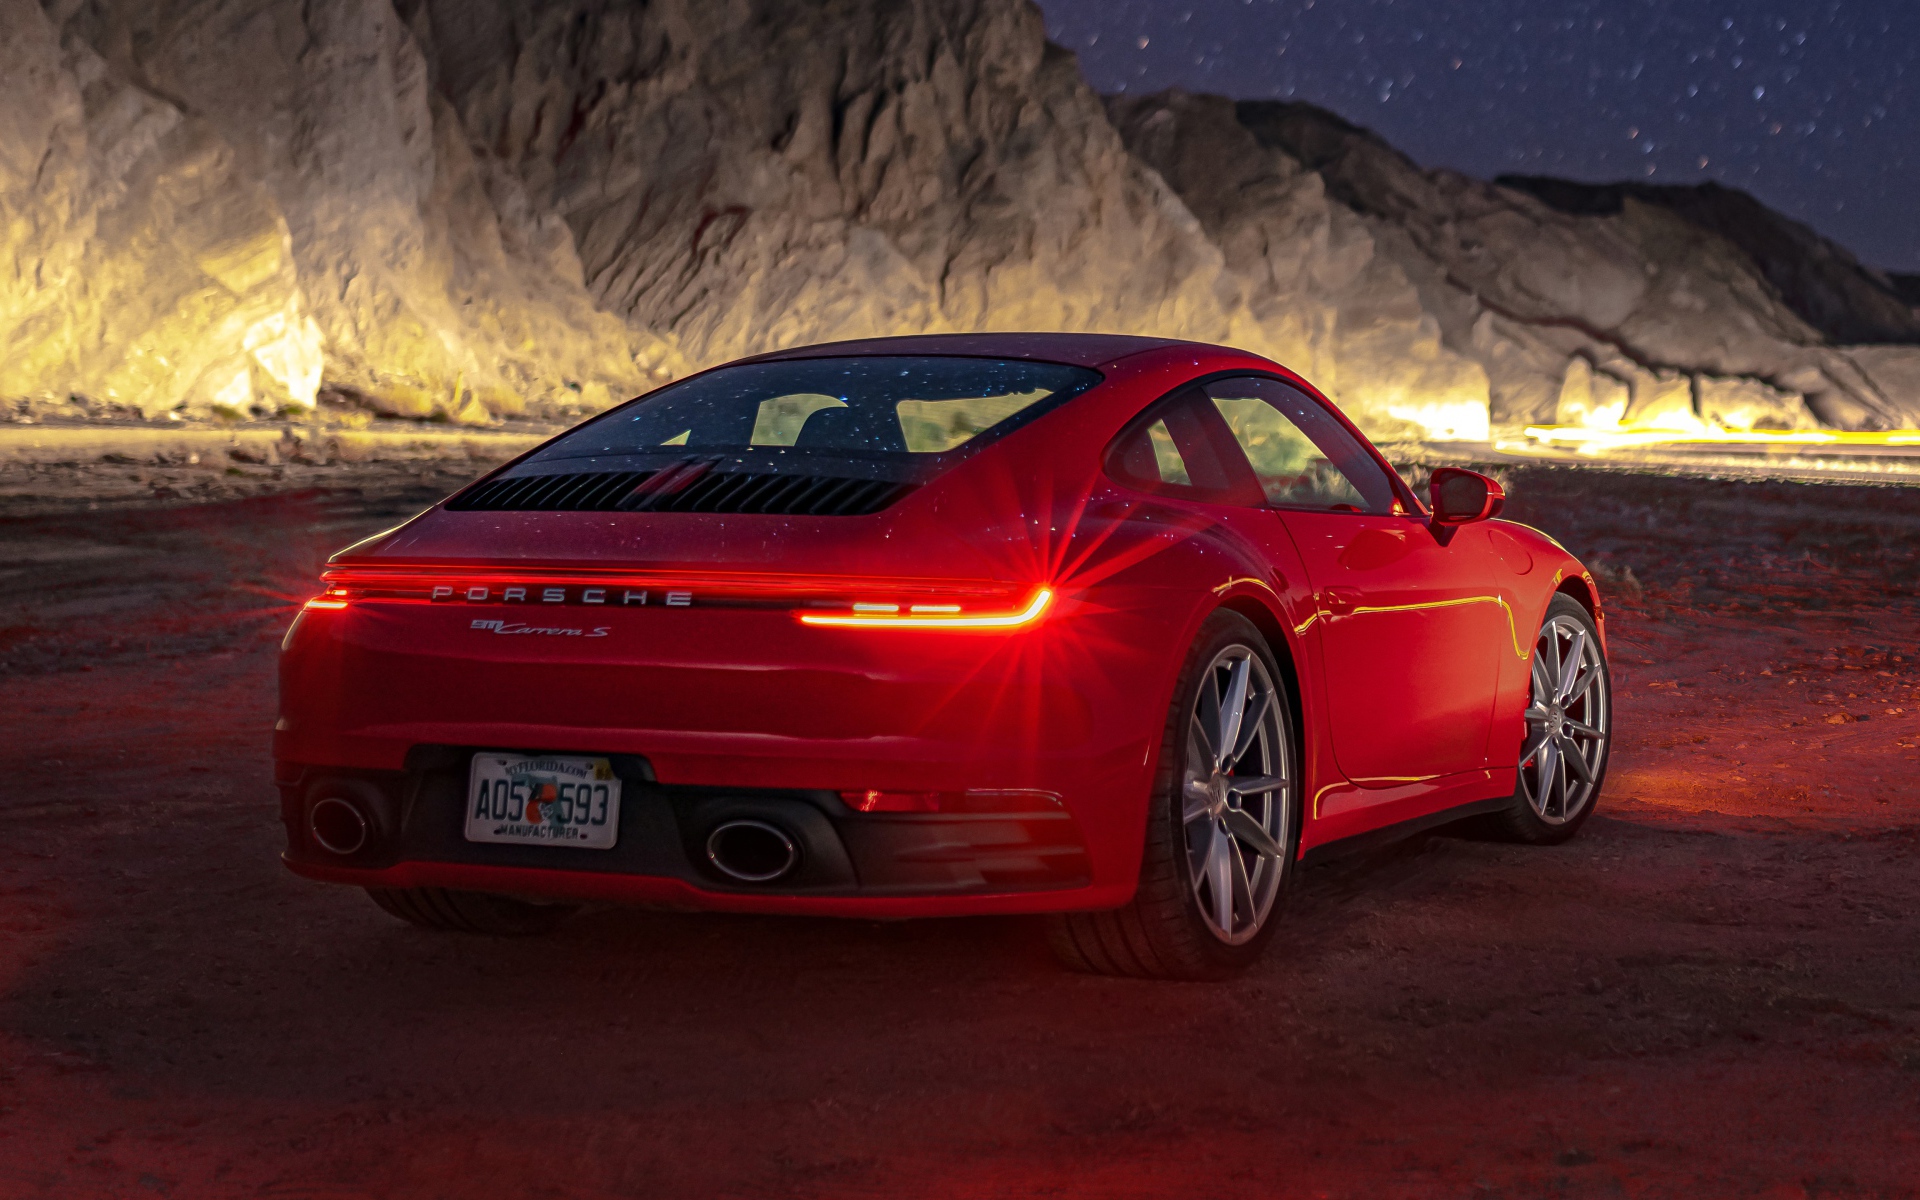 Красный автомобиль  Porsche 911 Carrera S, 2020 года в горах ночью 